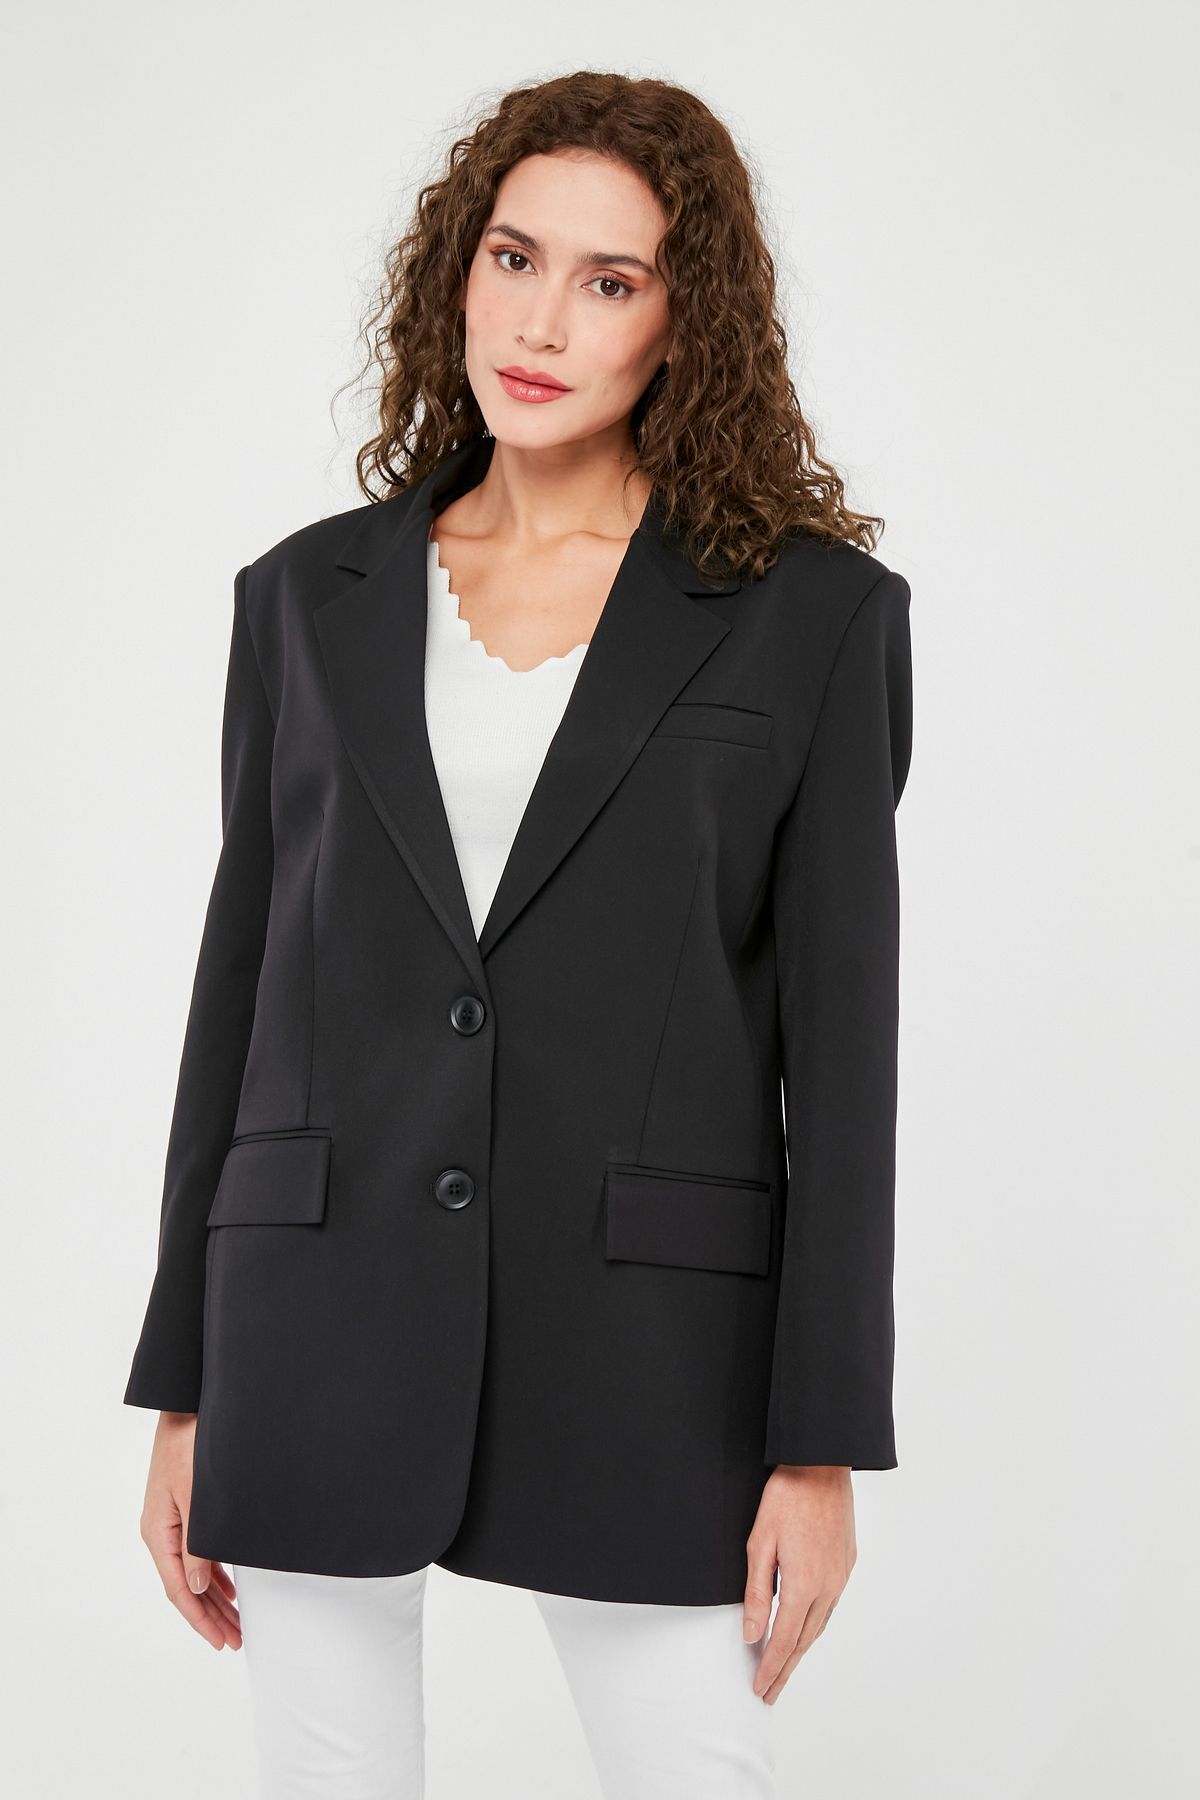 Bolivente Siyah Kadın Düğmeli Oversize Blazer Ceket